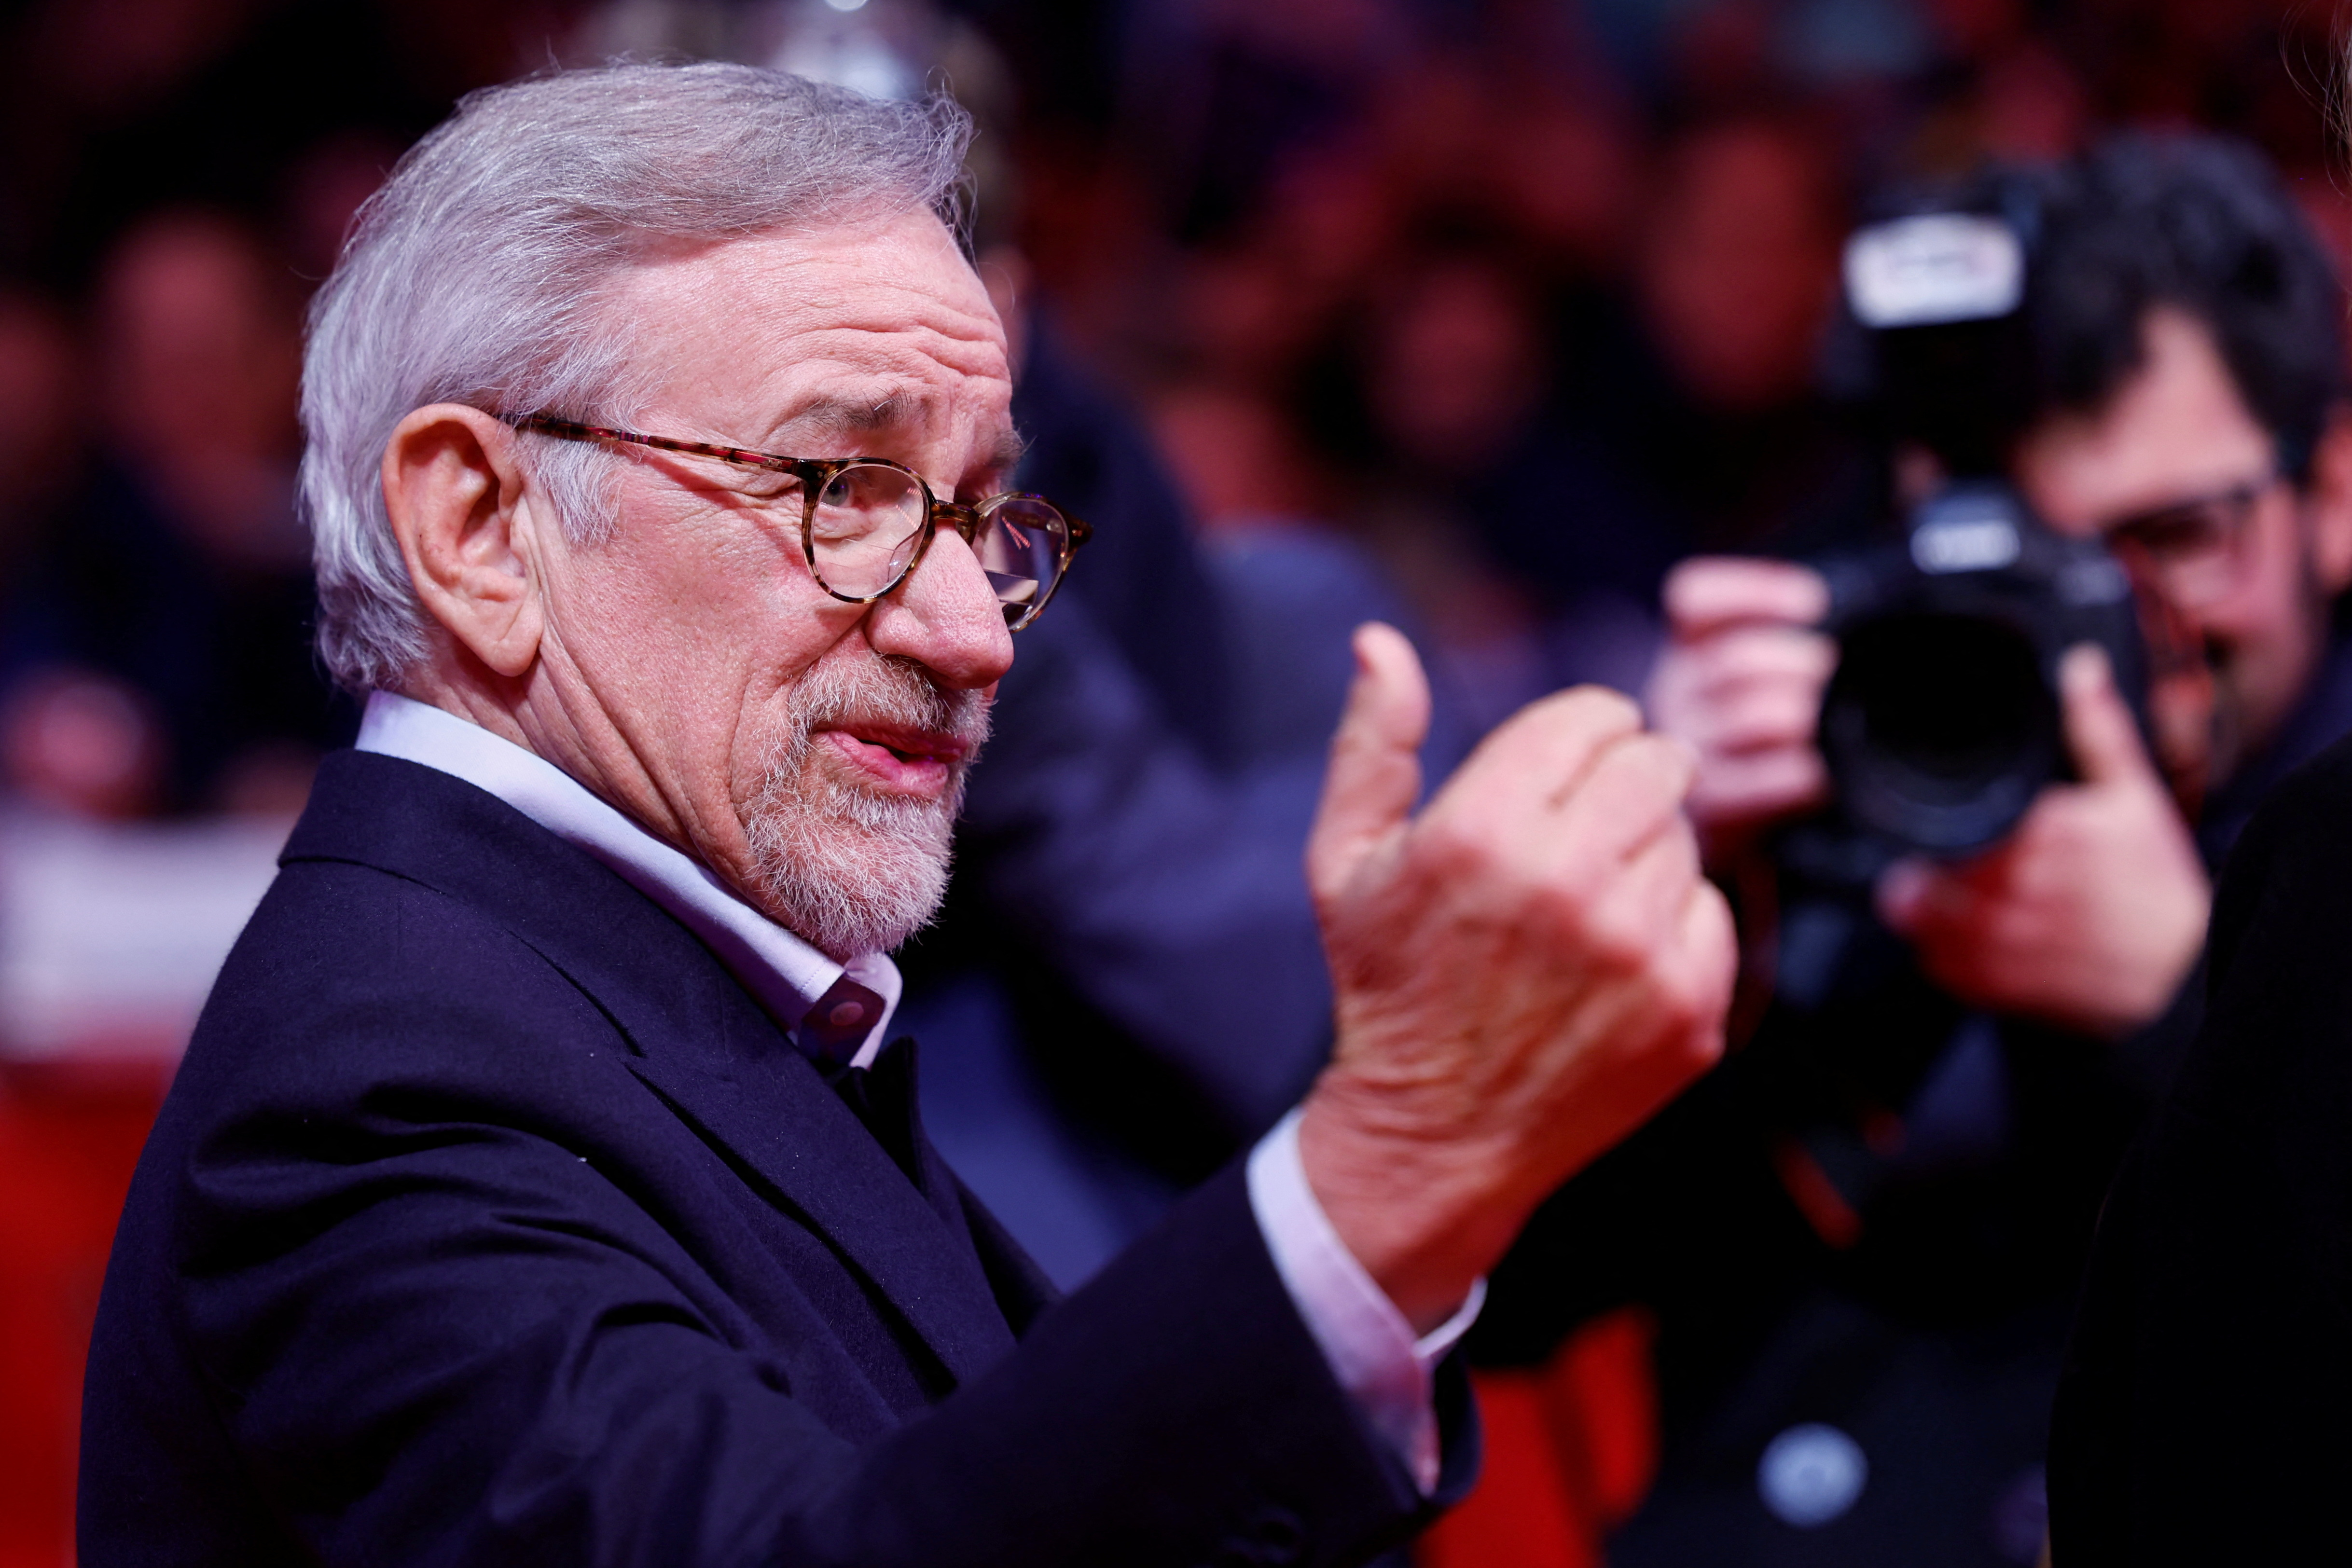 Steven Spielberg empata a Martin Scorsese y se colocan juntos en el segundo lugar de los directores más nominados de la historia, con 9 nominaciones cada uno
REUTERS/Michele Tantussi